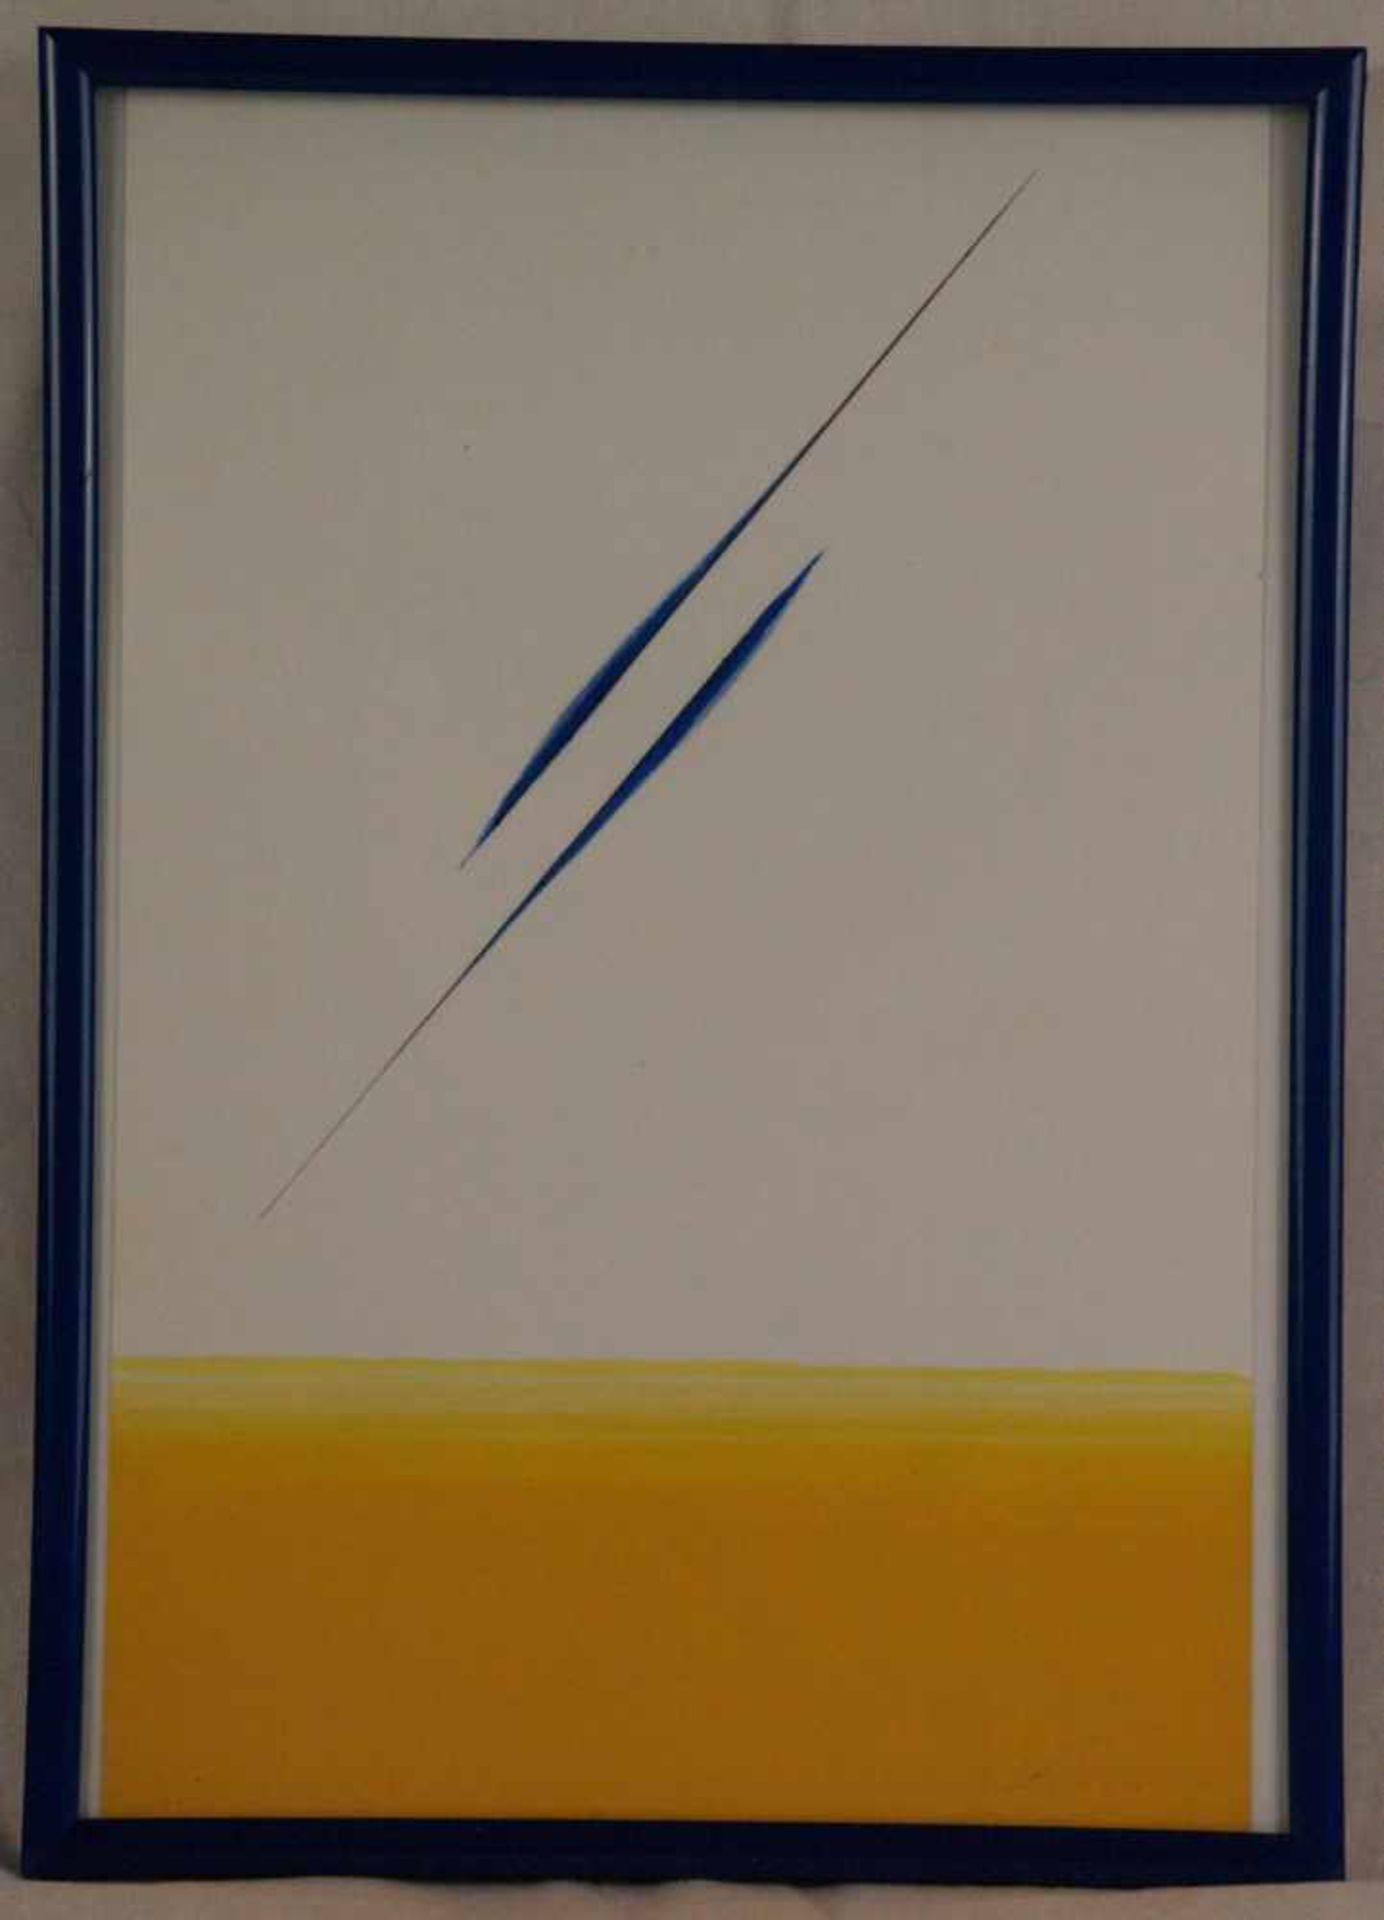 Loew, Peter (1931-2012) - Abstraktion in Orange und Blau, Mischtechnik auf Papier, unten rechts